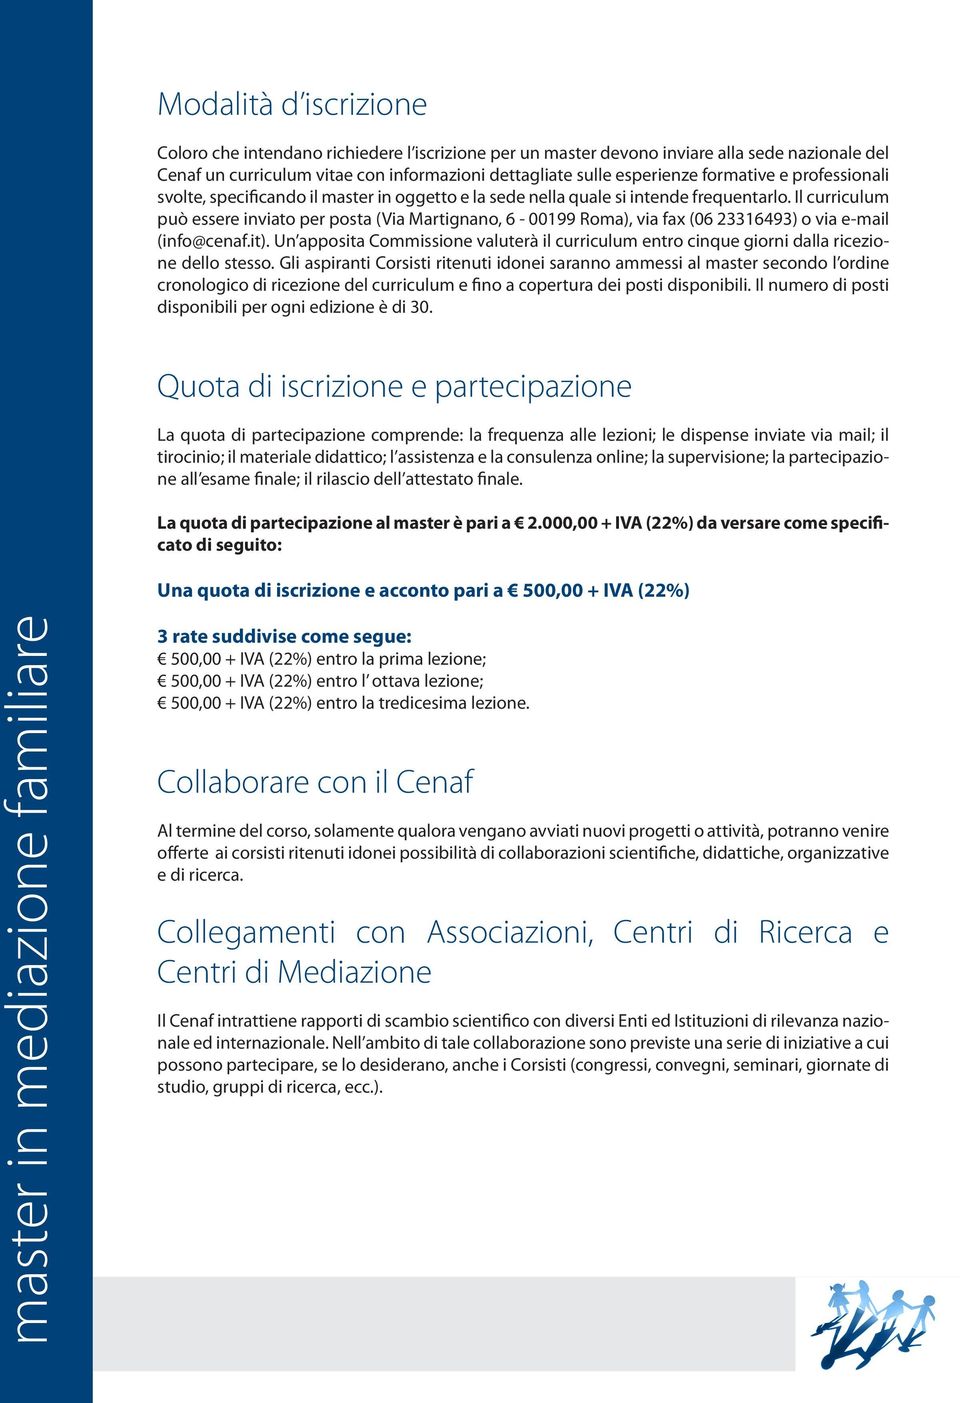 Il curriculum può essere inviato per posta (Via Martignano, 6-00199 Roma), via fax (06 23316493) o via e-mail (info@cenaf.it).